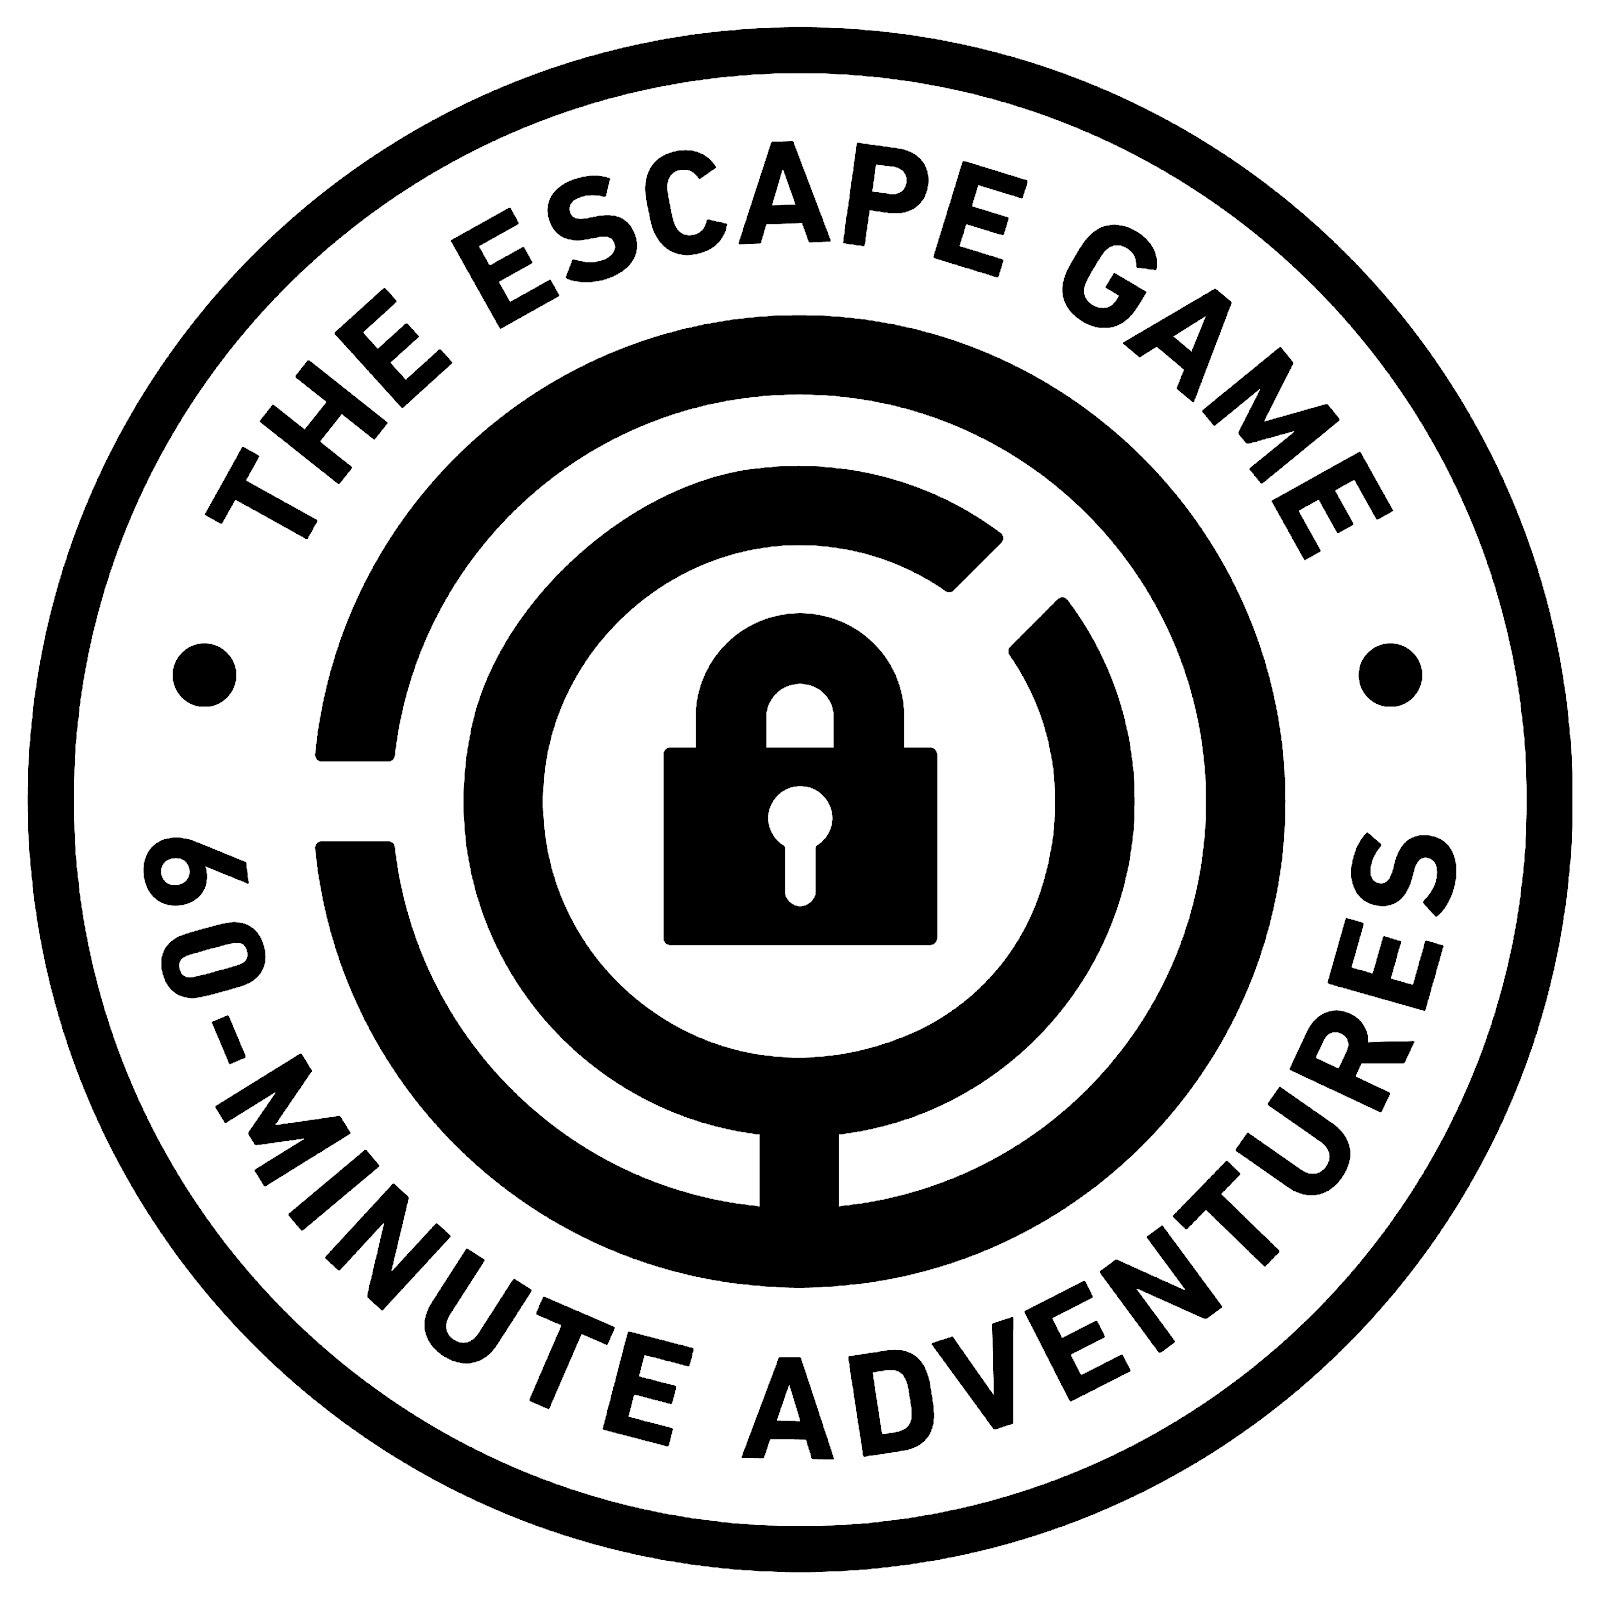 The Escape Game at Crocker Park, Westlake, OH